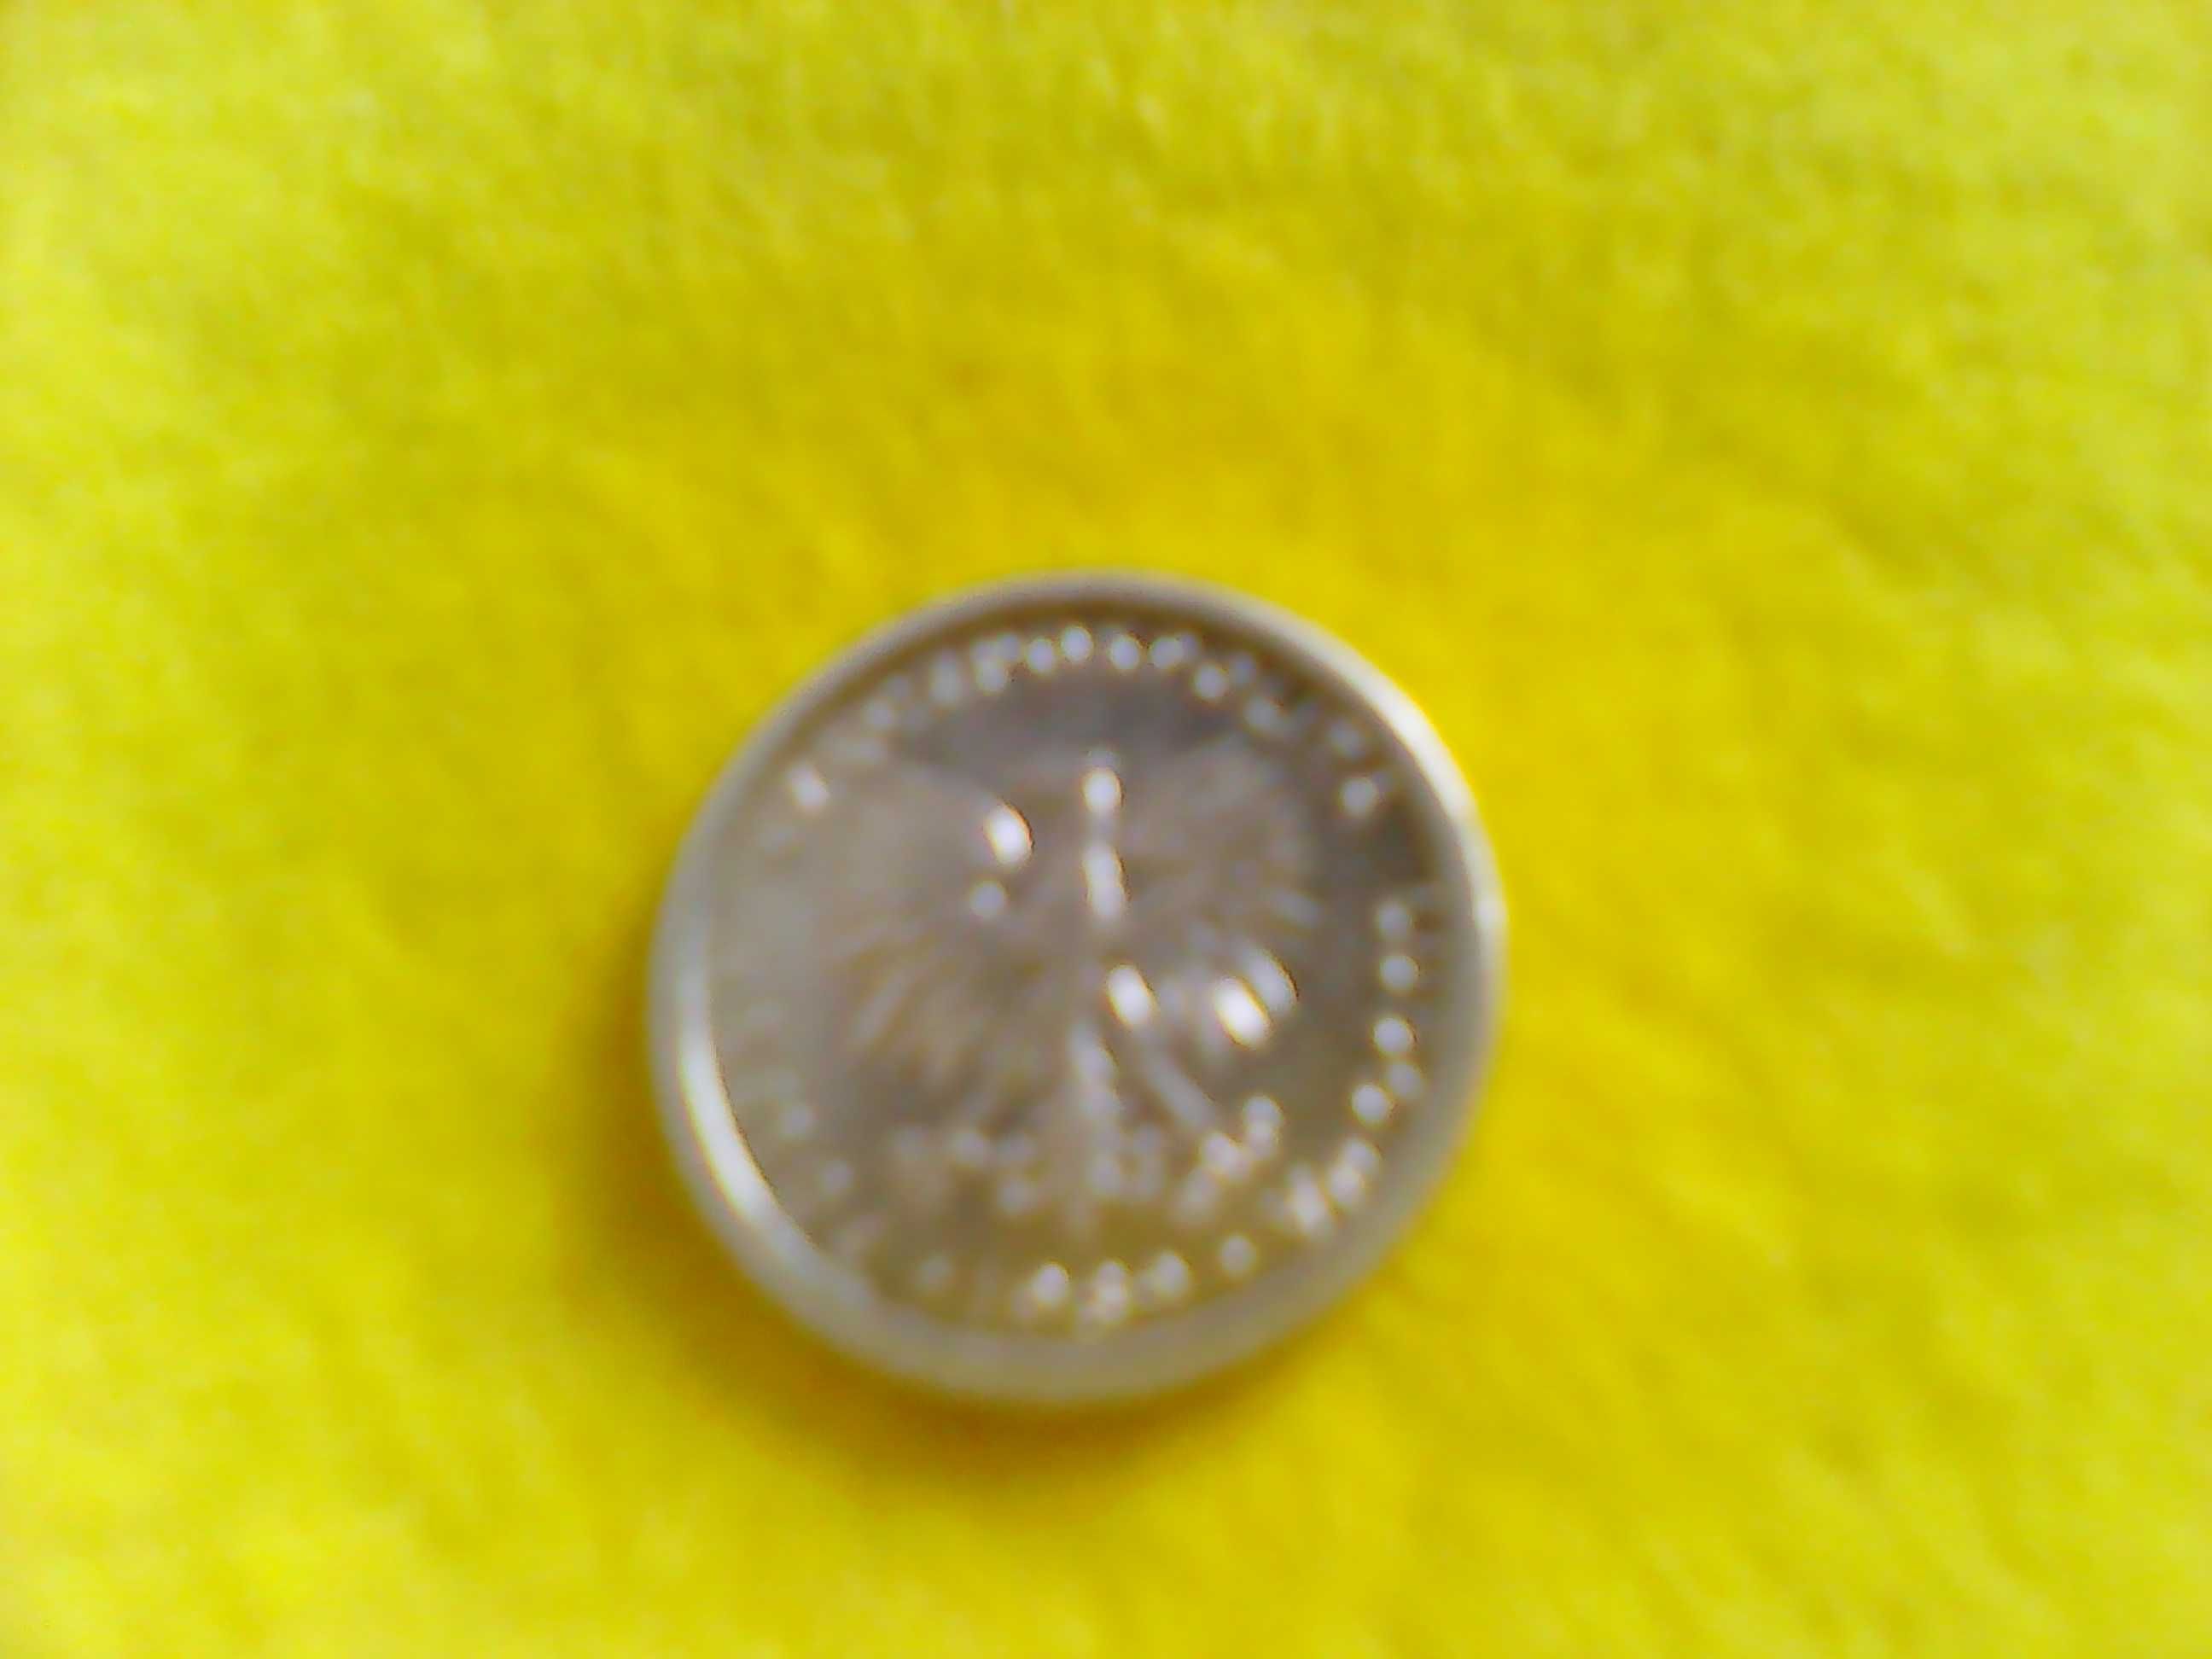 Sprzedam monete - O nominale - 1 zl. - Z 1989 r. - SUPER CENA !!!